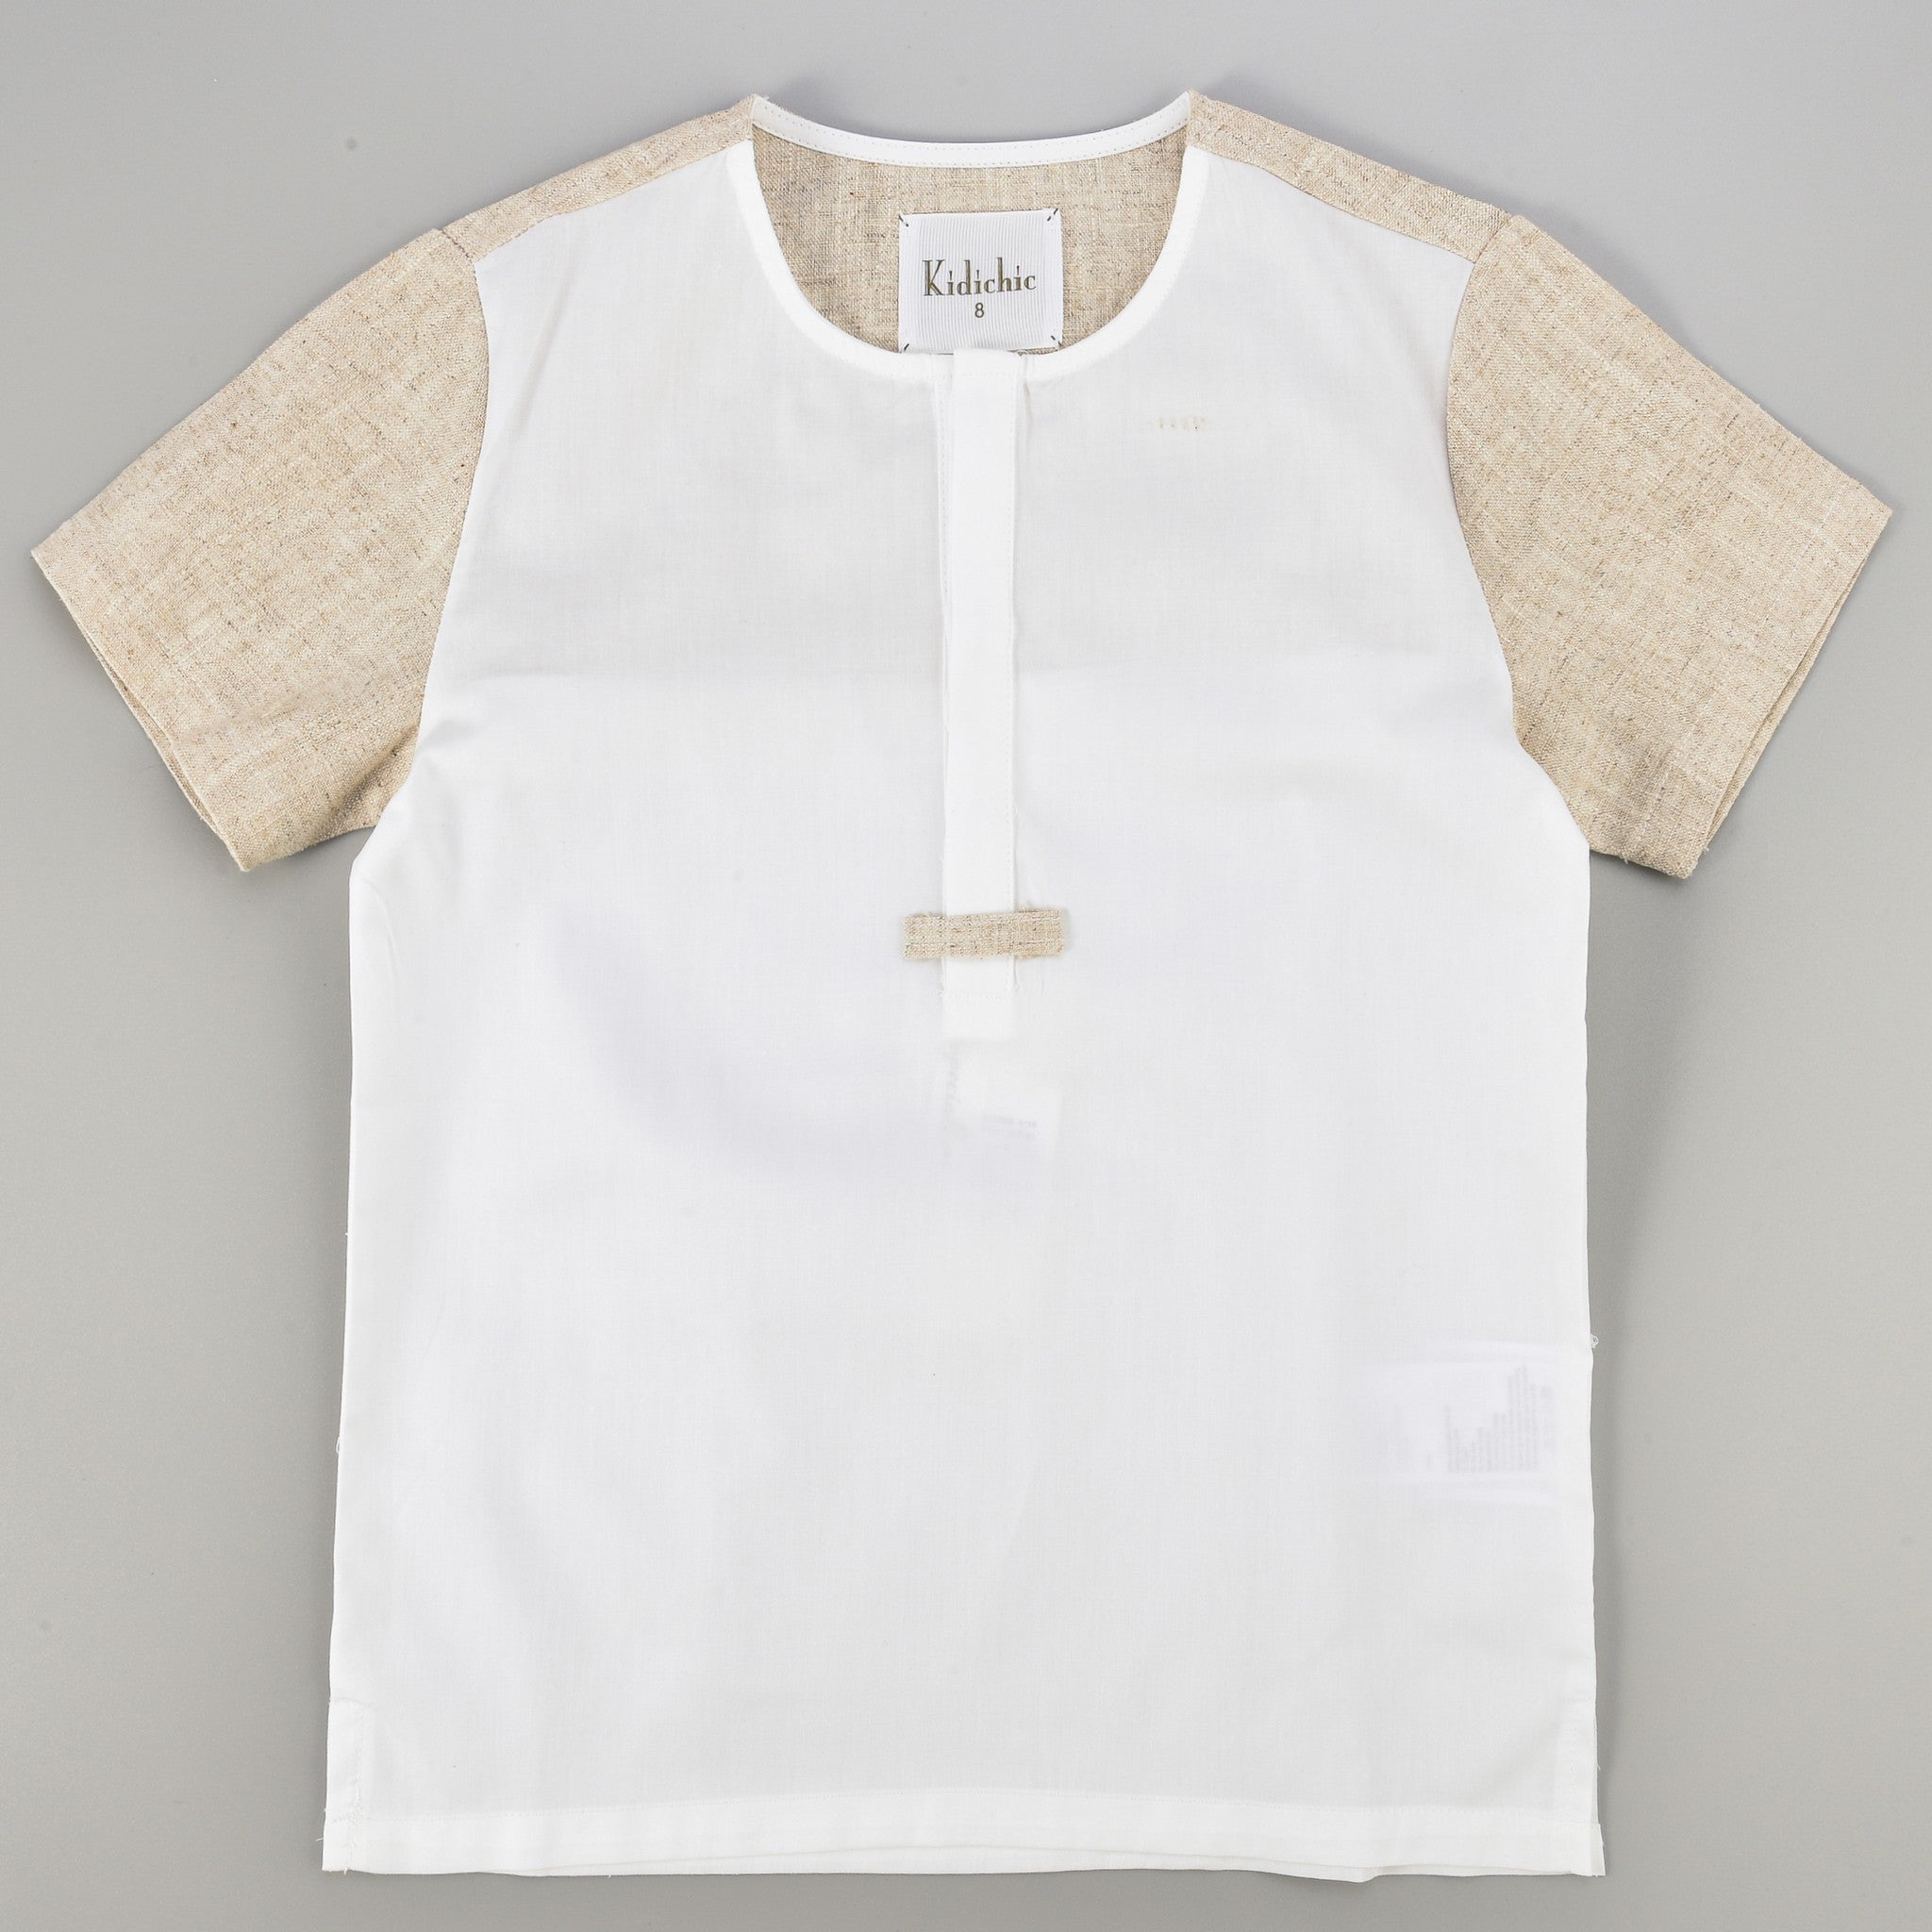 Combo Fabric Shirt - Kidichic